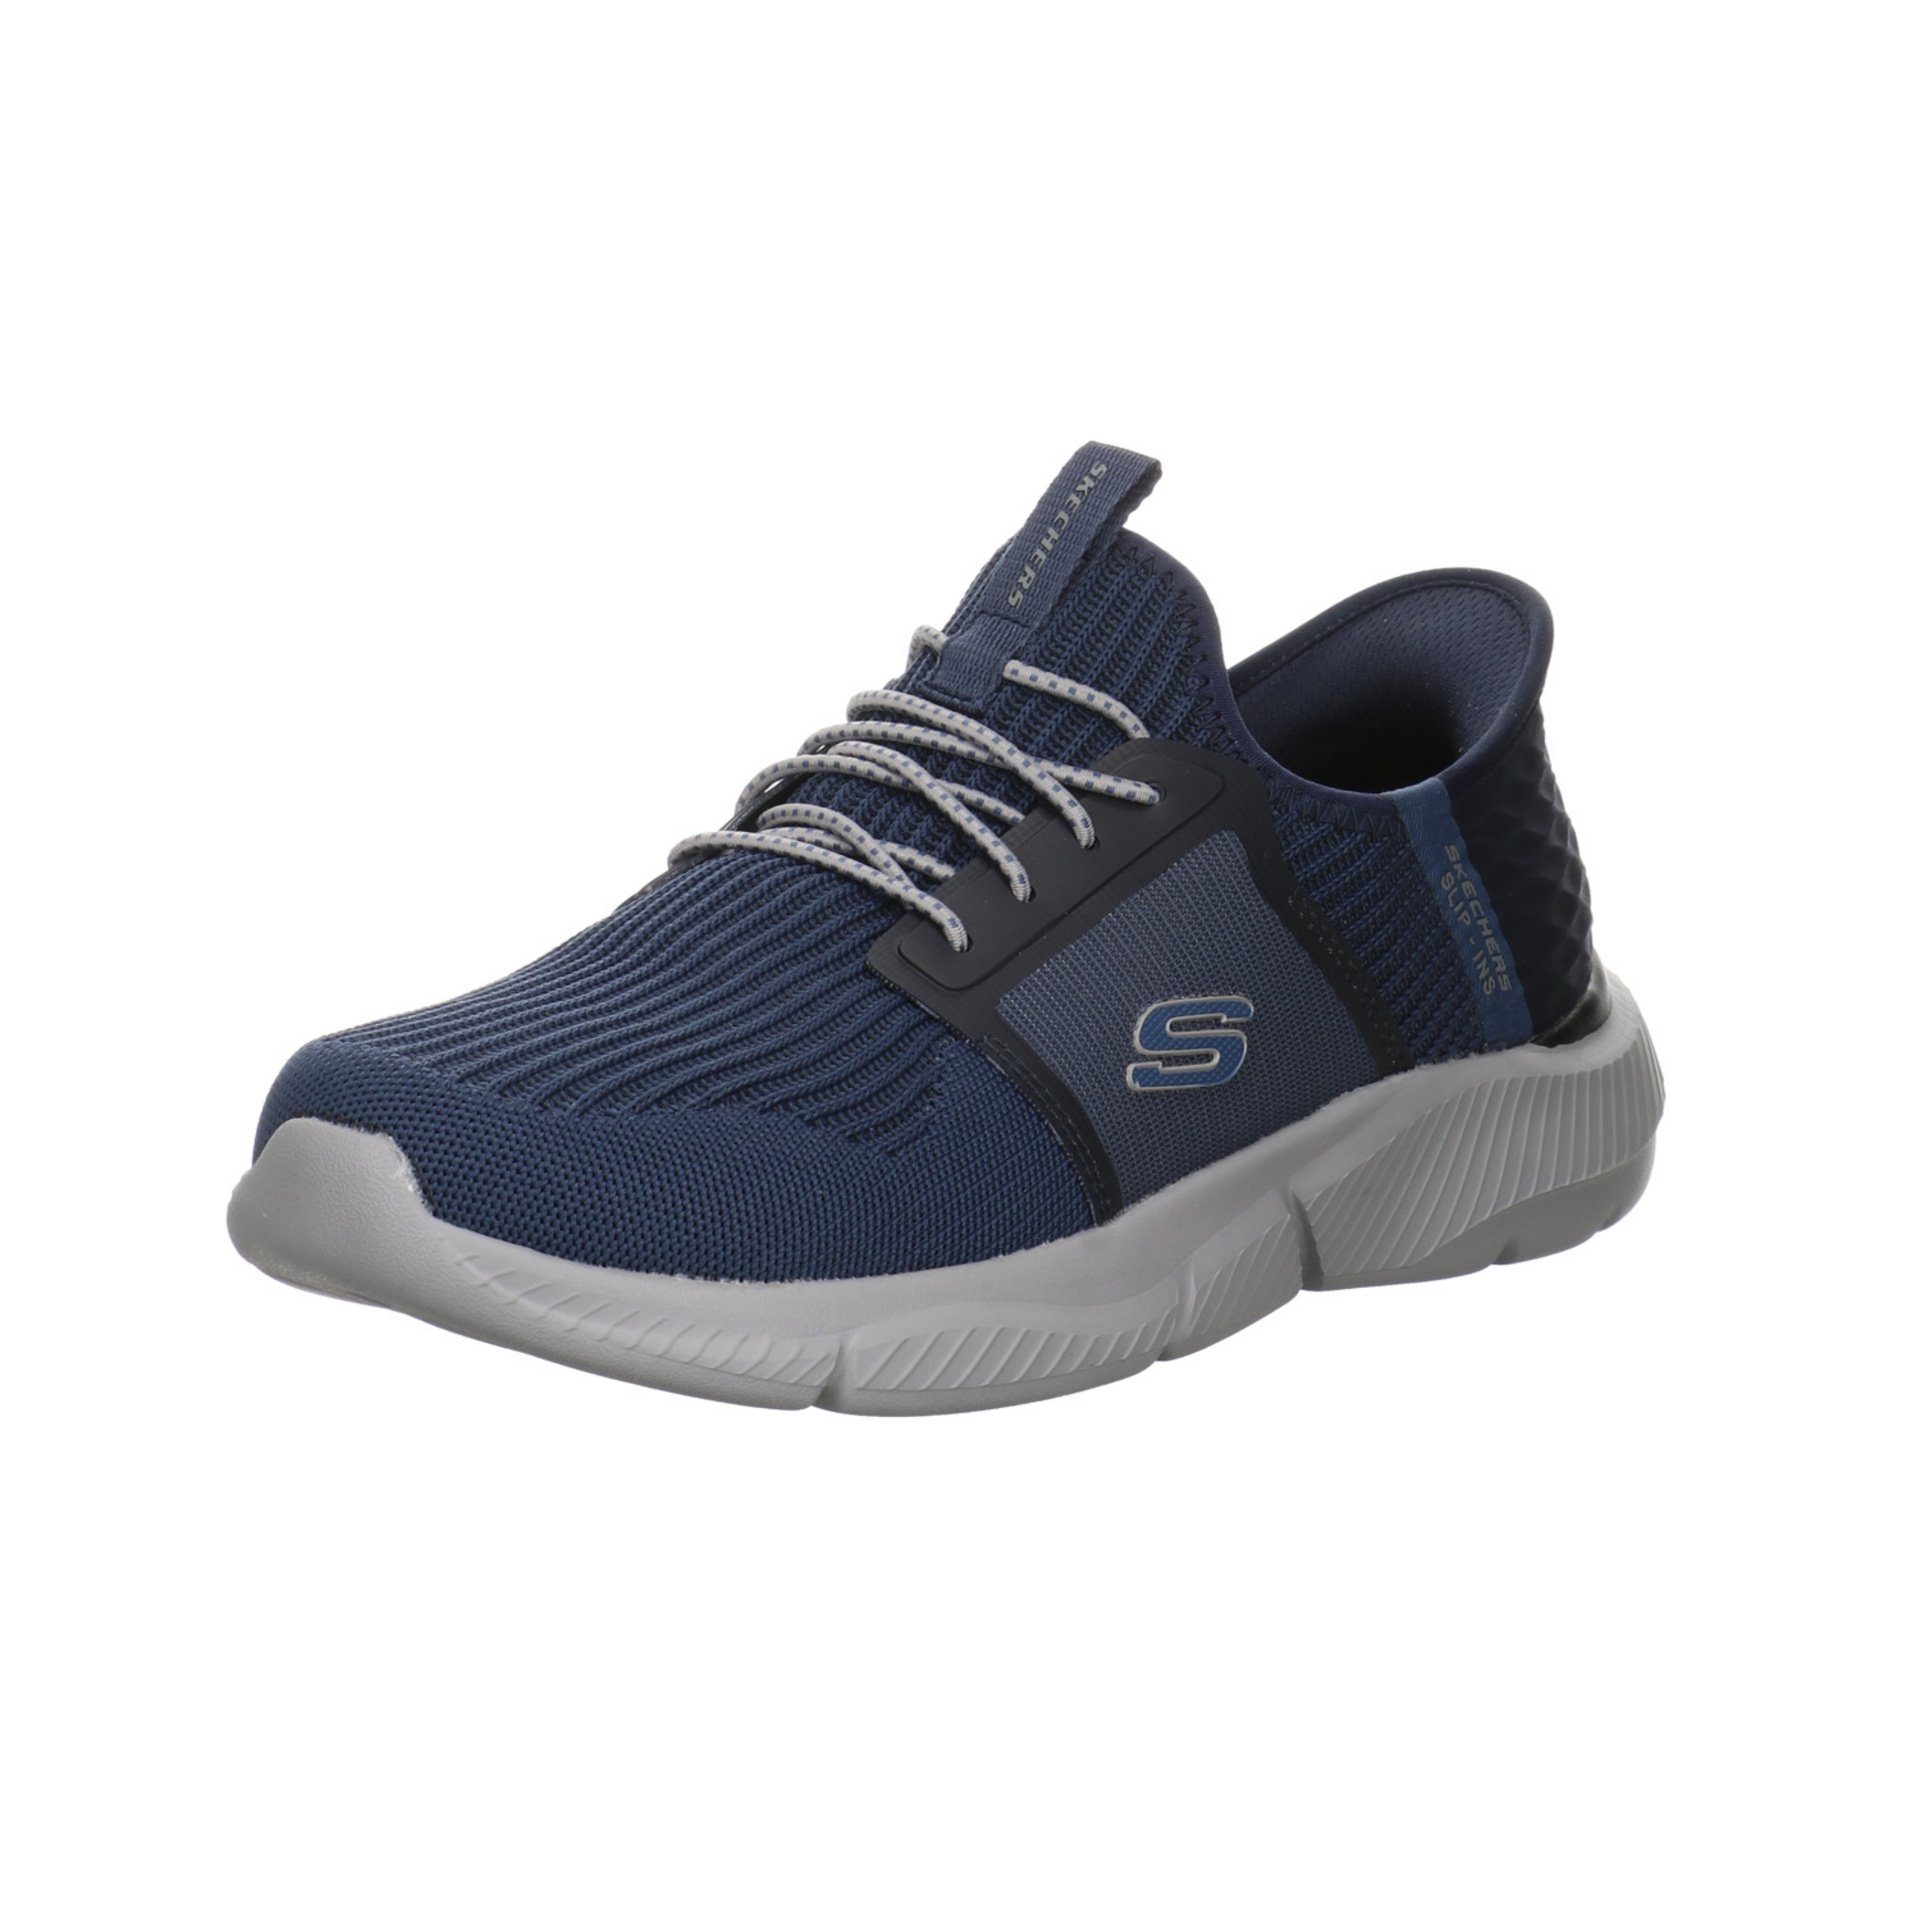 Skechers Herren Slipper Schuhe Slip-On Sneaker Synthetik blau dunkel